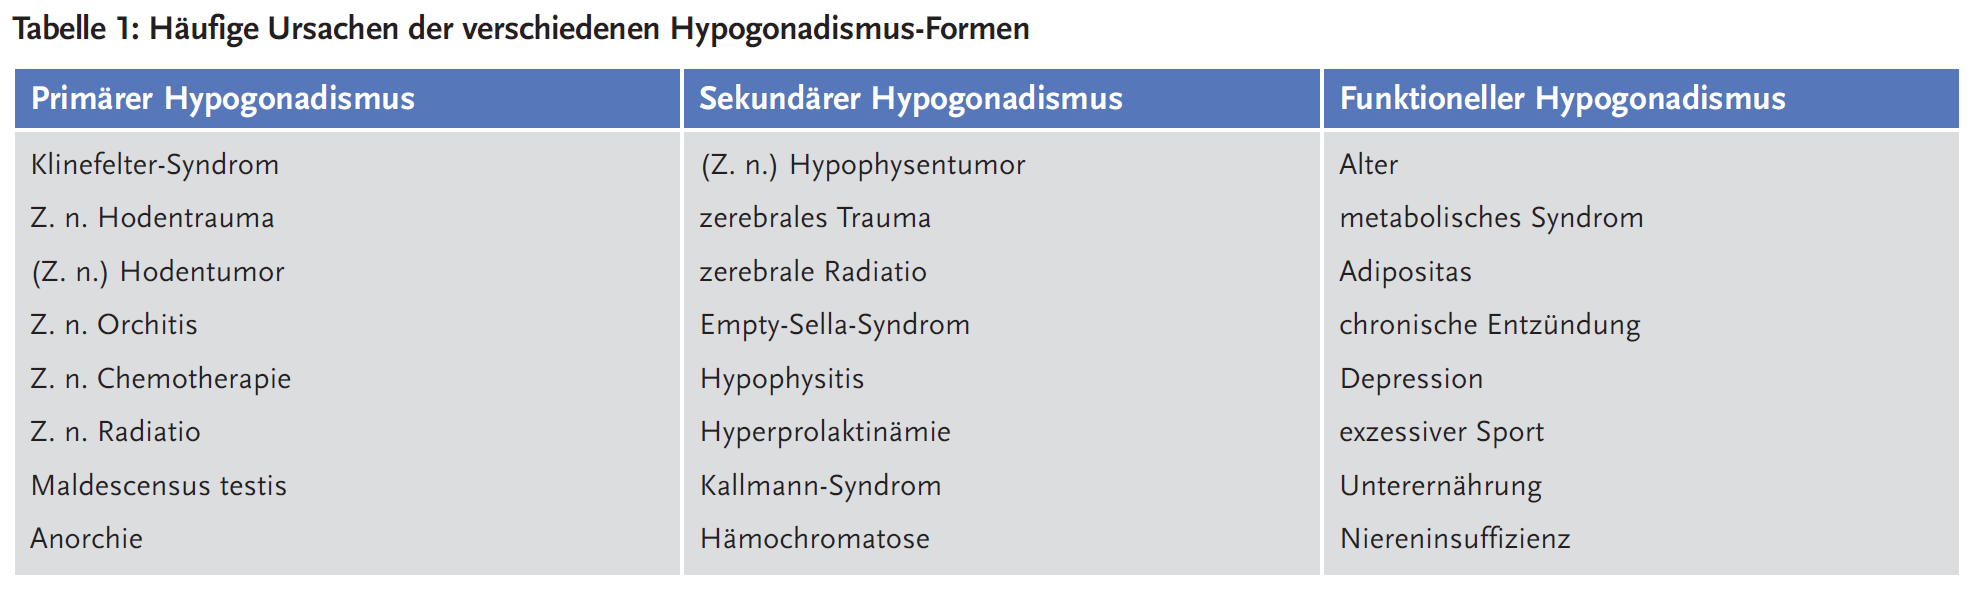 Tabelle 1: Häufige Ursachen der verschiedenen Hypogonadismus-Formen